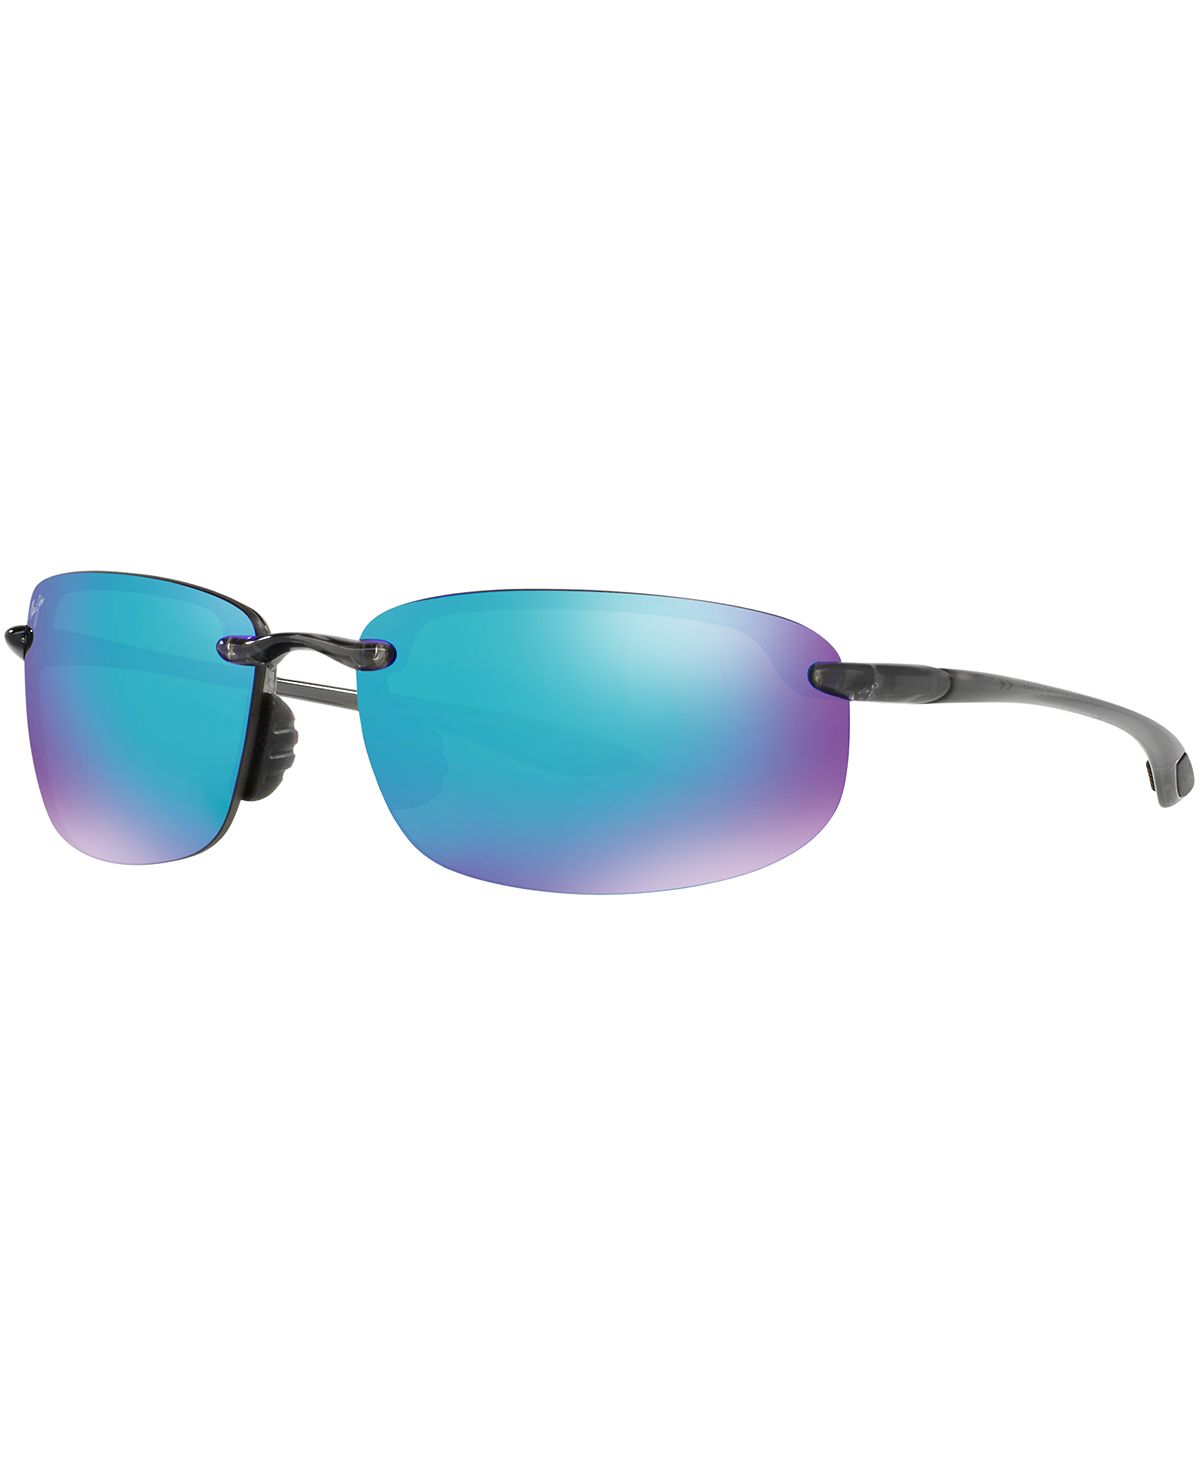 Поляризованные солнцезащитные очки hookipa, коллекция 407 blue hawaii Maui Jim, мульти солнцезащитные очки kou maui jim цвет navy blue blue hawaii